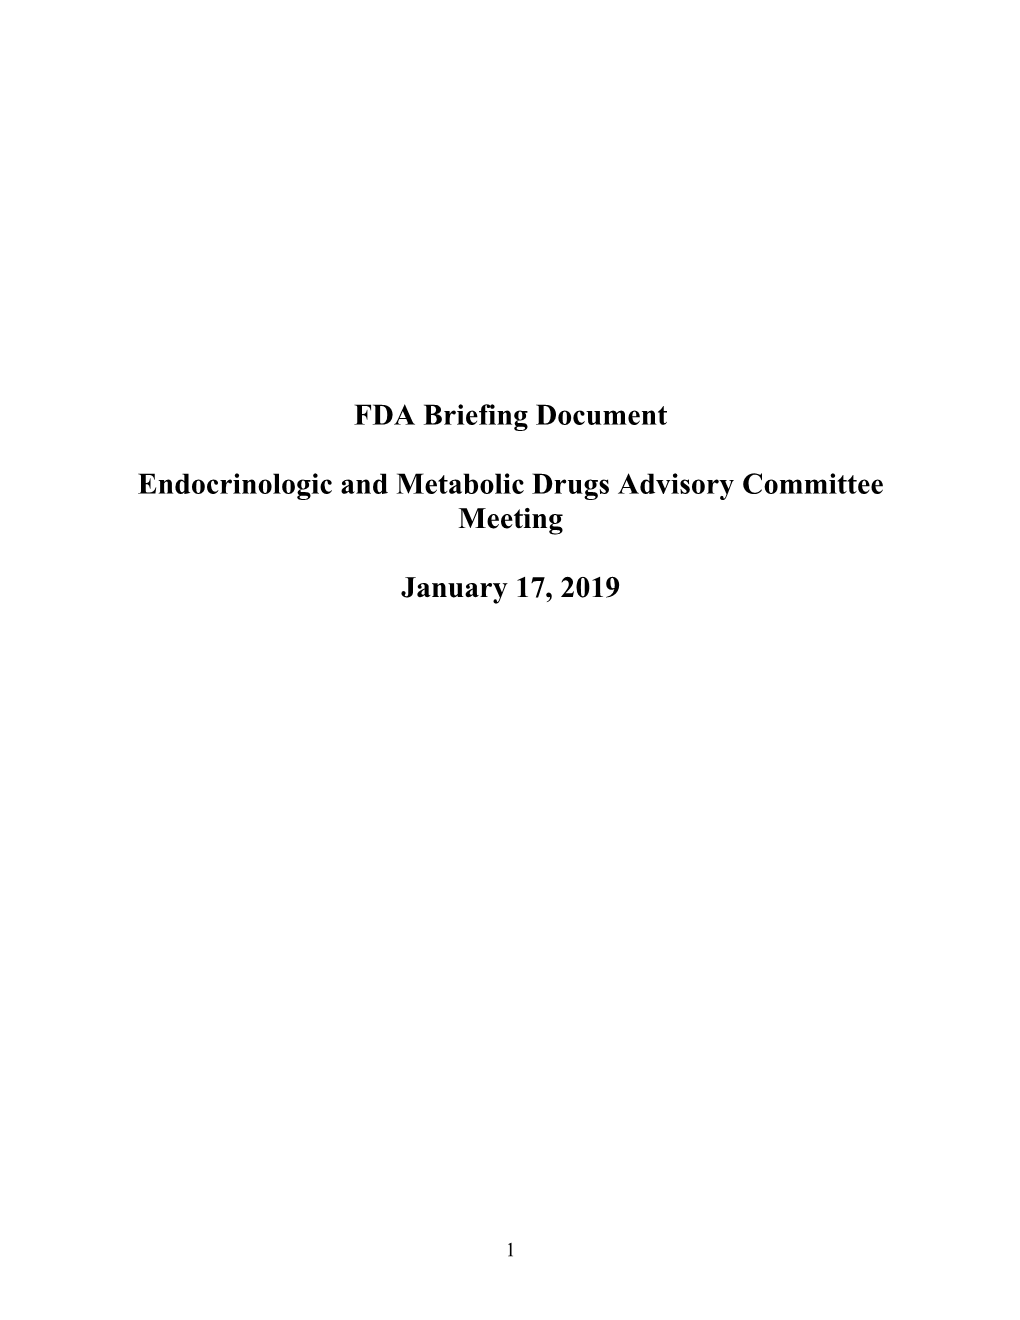 FDA Briefing Document Endocrinologic and Metabolic